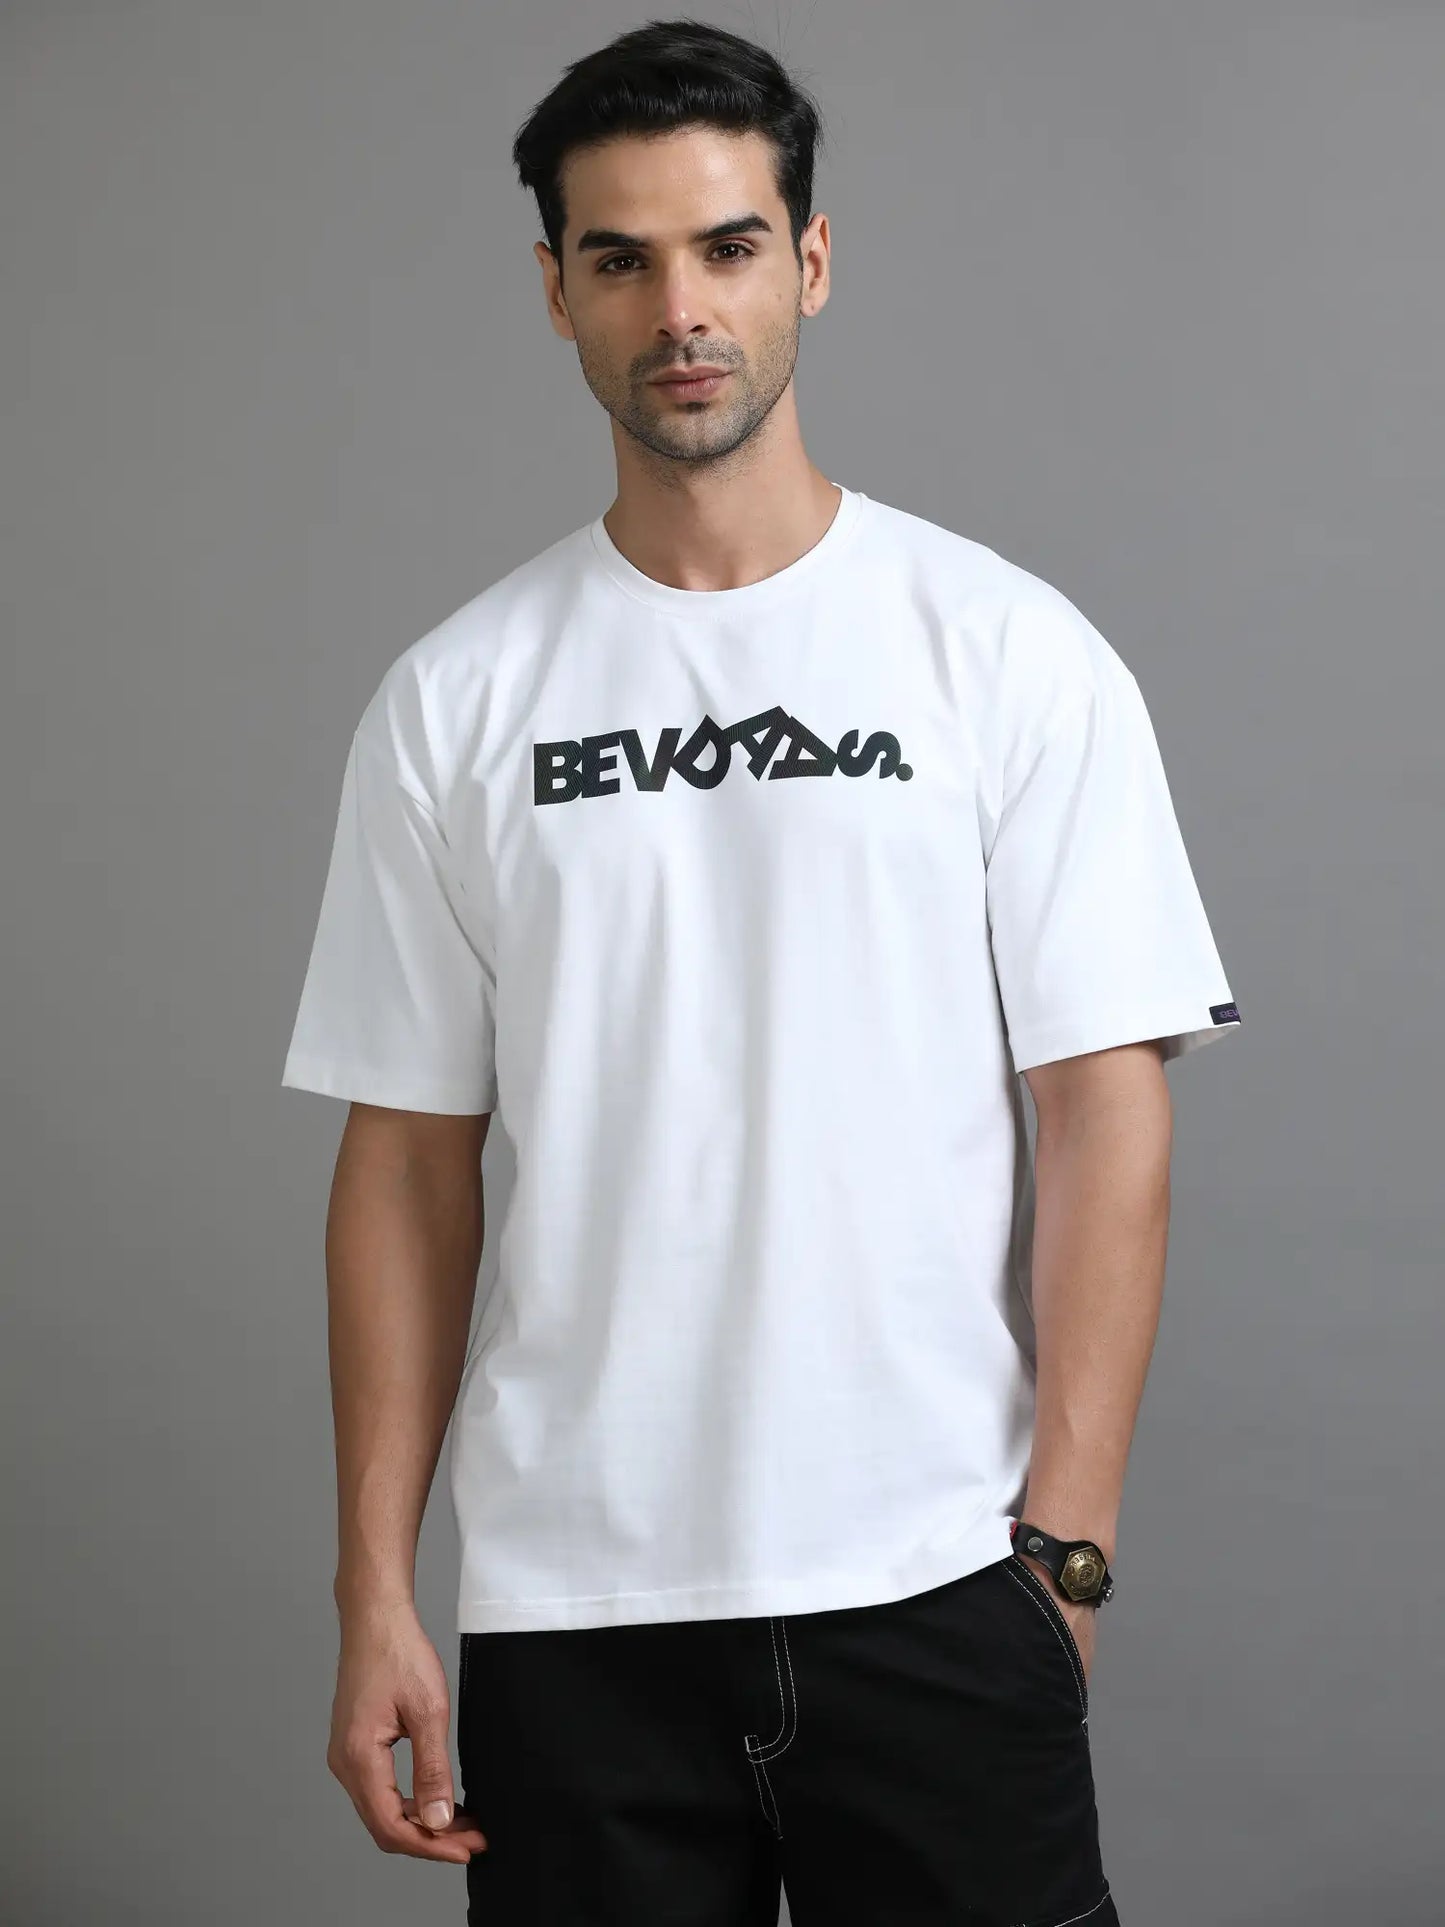 White Out Dropshoulder Bevdaas Oversized Dropshoulder Tshirt